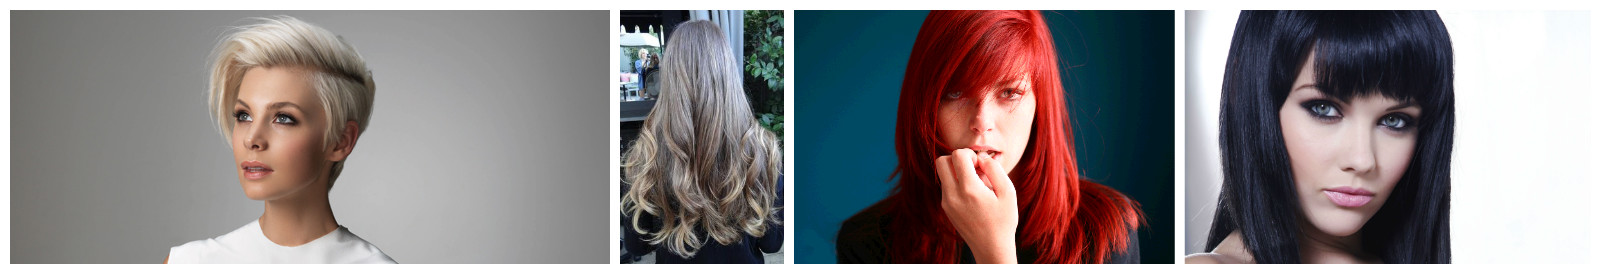 Какой цвет волос получится если на рыжие волосы покрасить пепельным